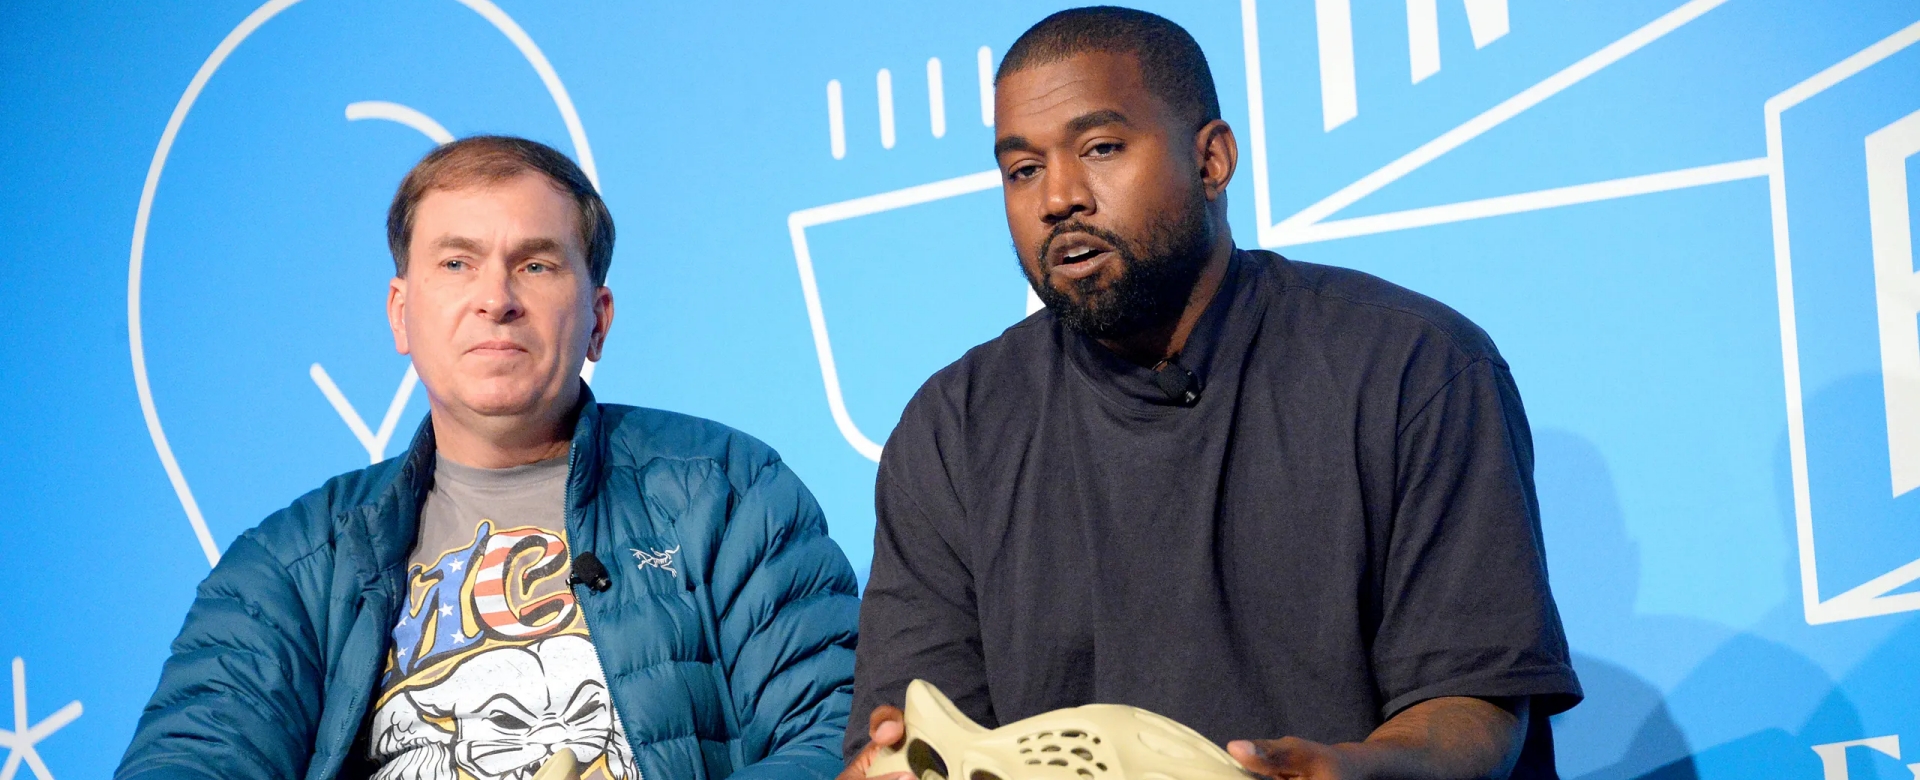 Câu chuyện giữa Kanye West và adidas liệu có chấm dứt?